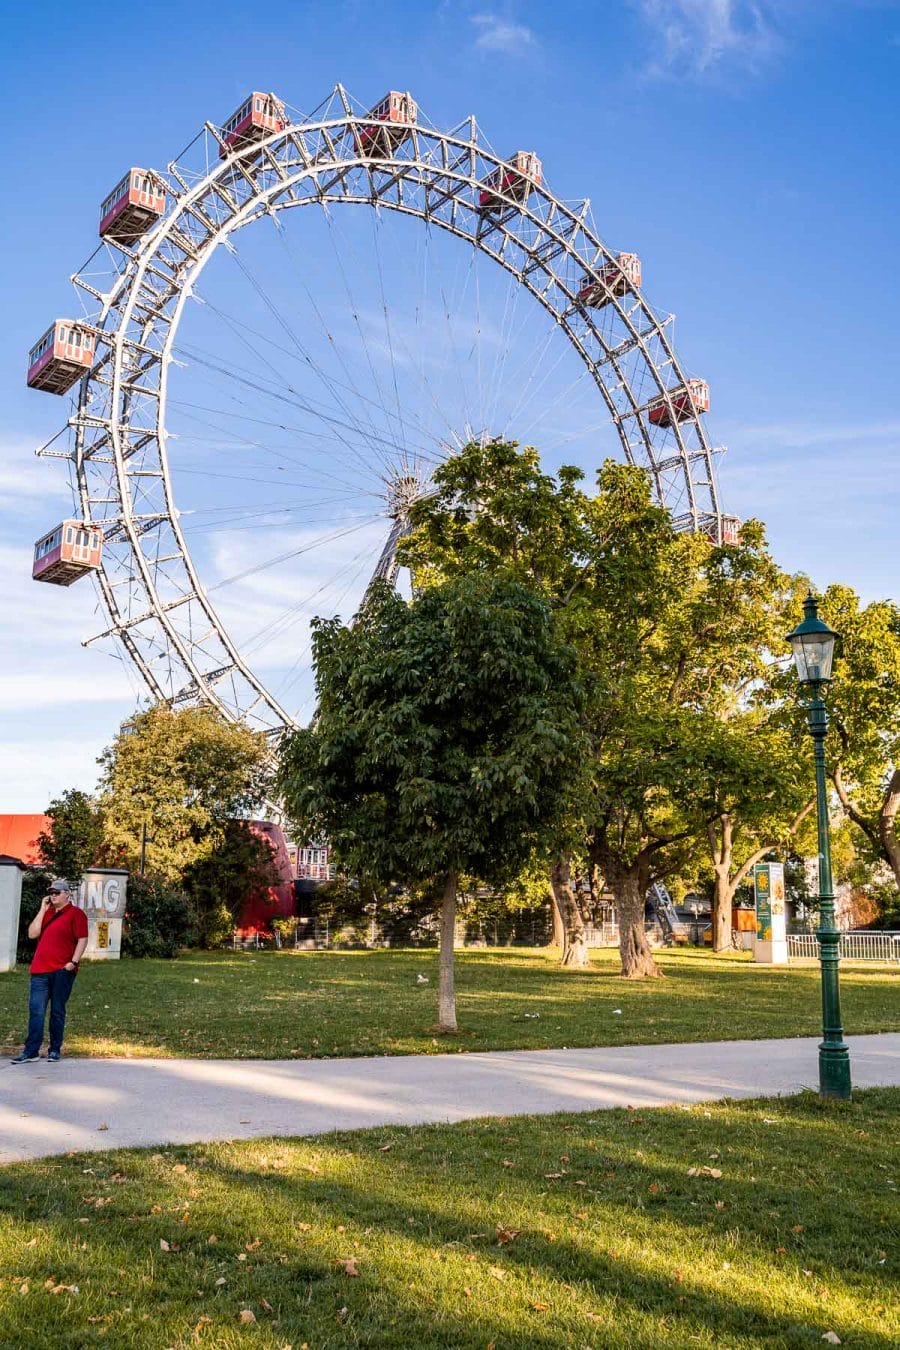 Ferris wheel at the Vergnügungspark Prater in Vienna